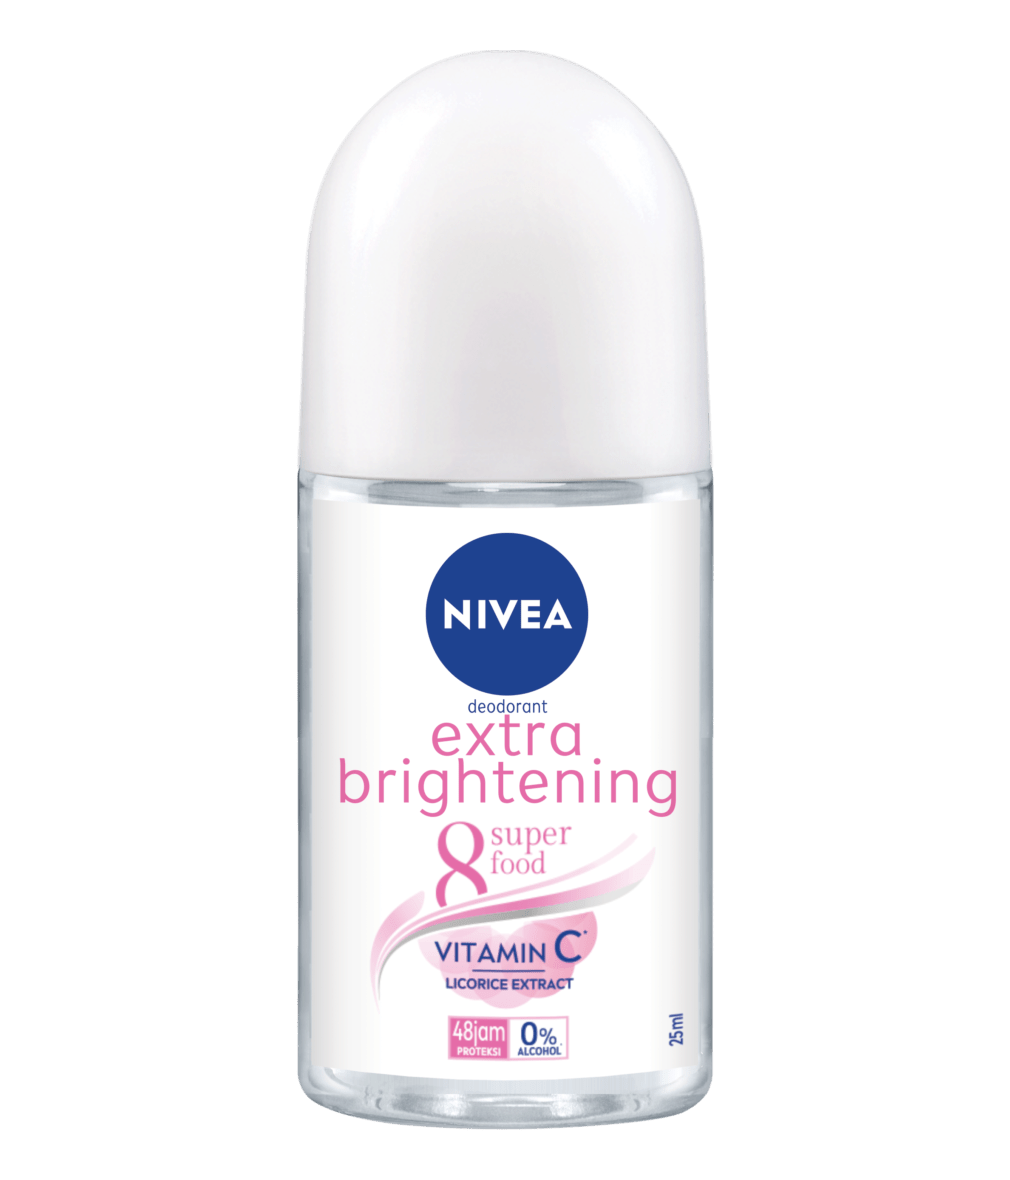 NIVEA Extra Brightening Deodorant Roll On